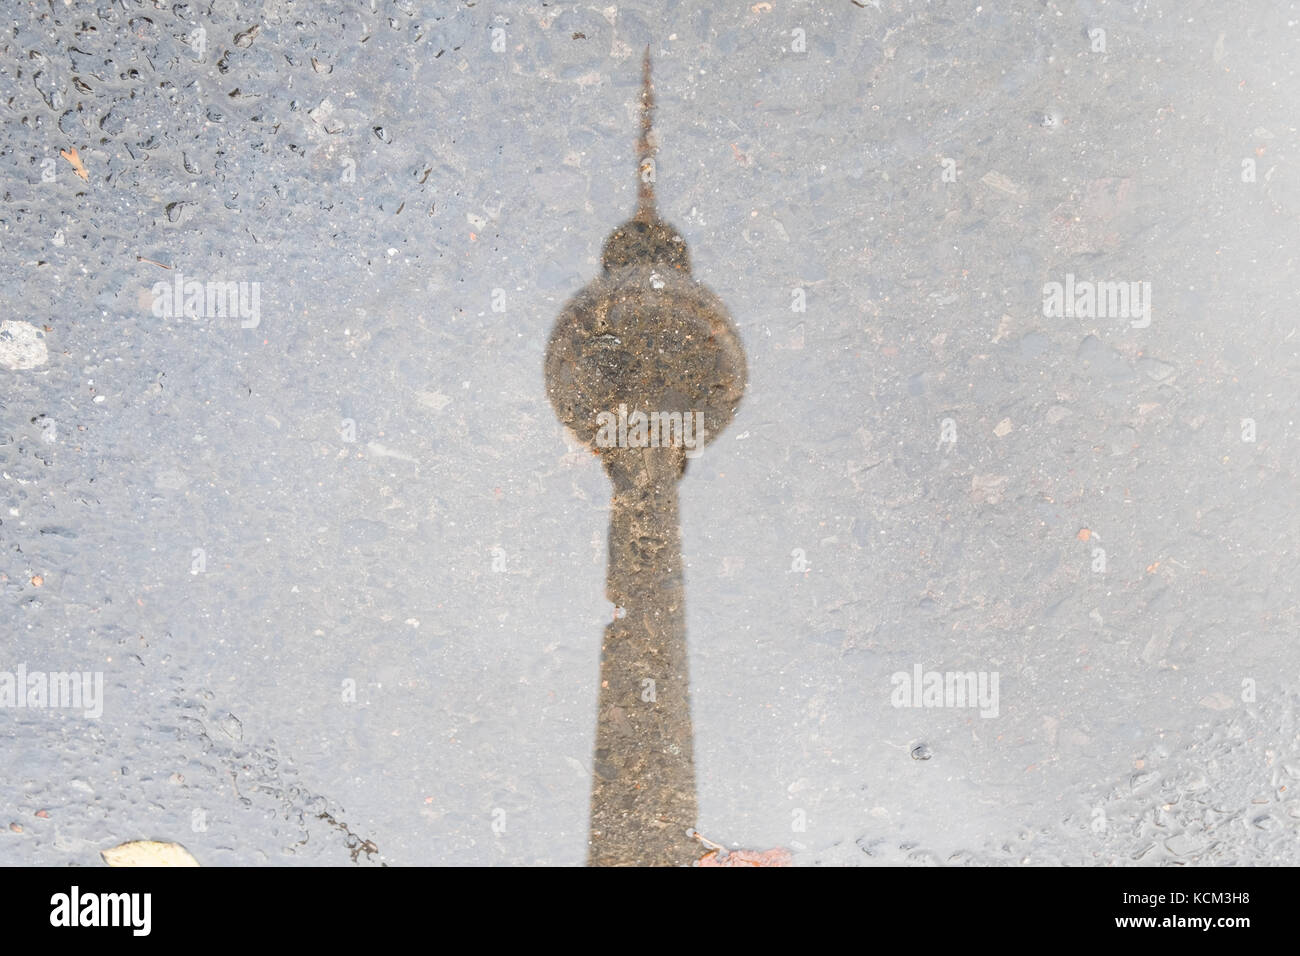 Fernsehturm Berlin Wasser Reflexion in der Pfütze - Stockfoto